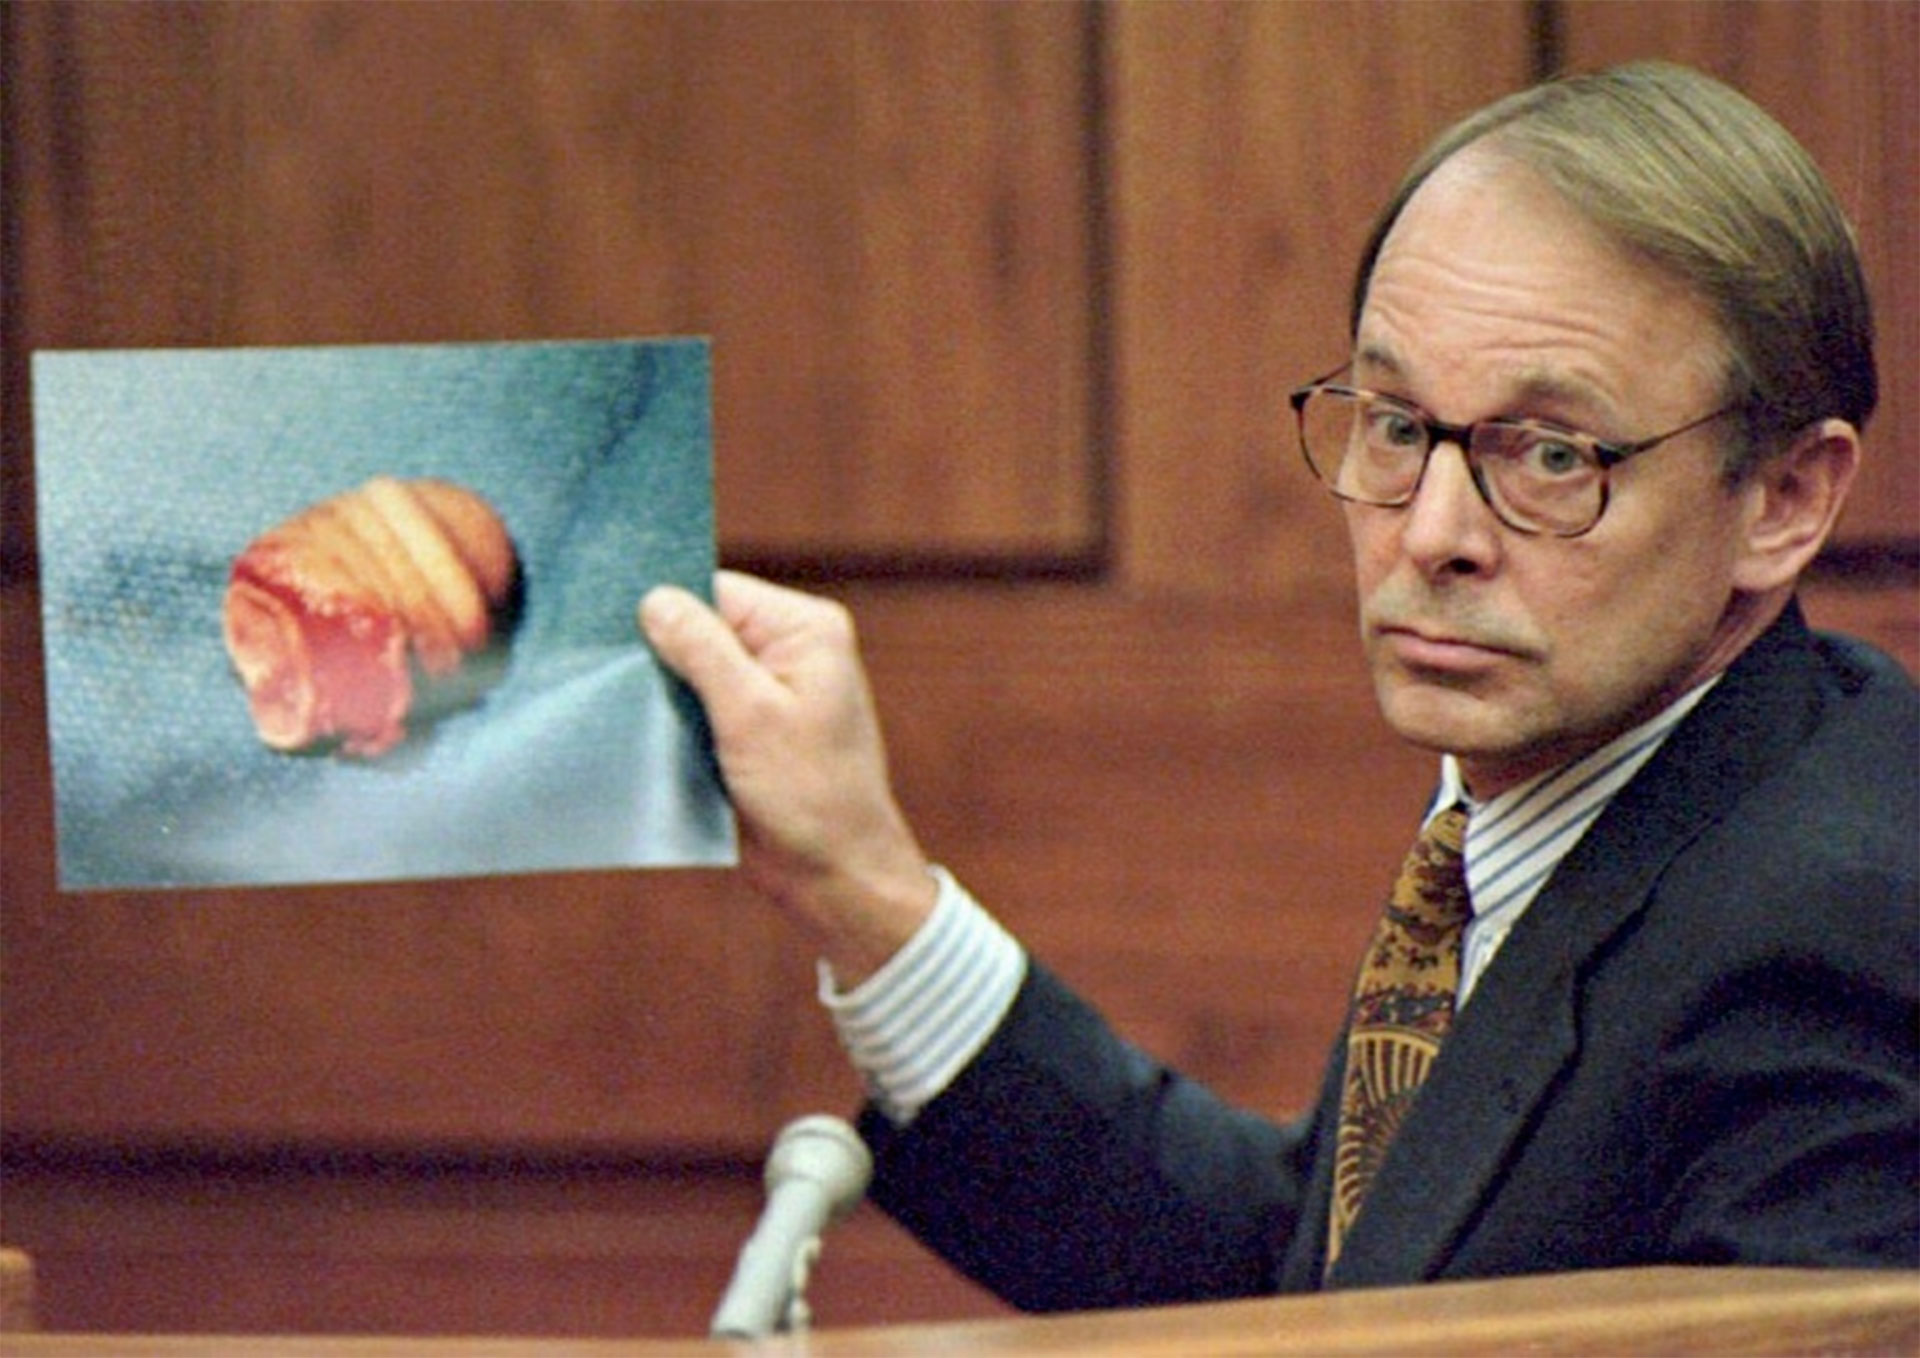 La parte del pene mostrado durante el juicio.